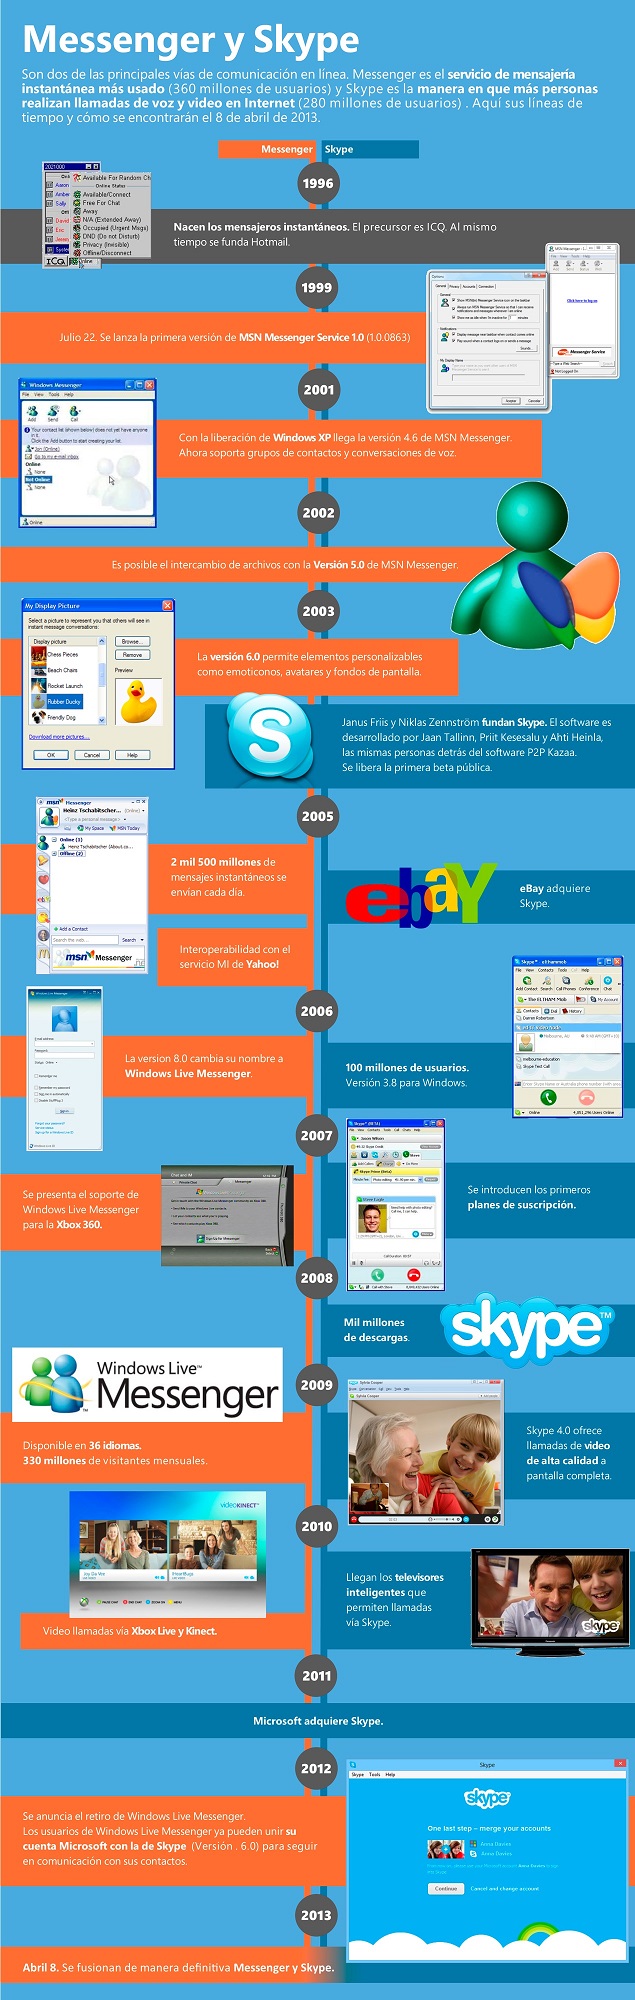 Timeline-Skype-Messenger_jpg.jpg